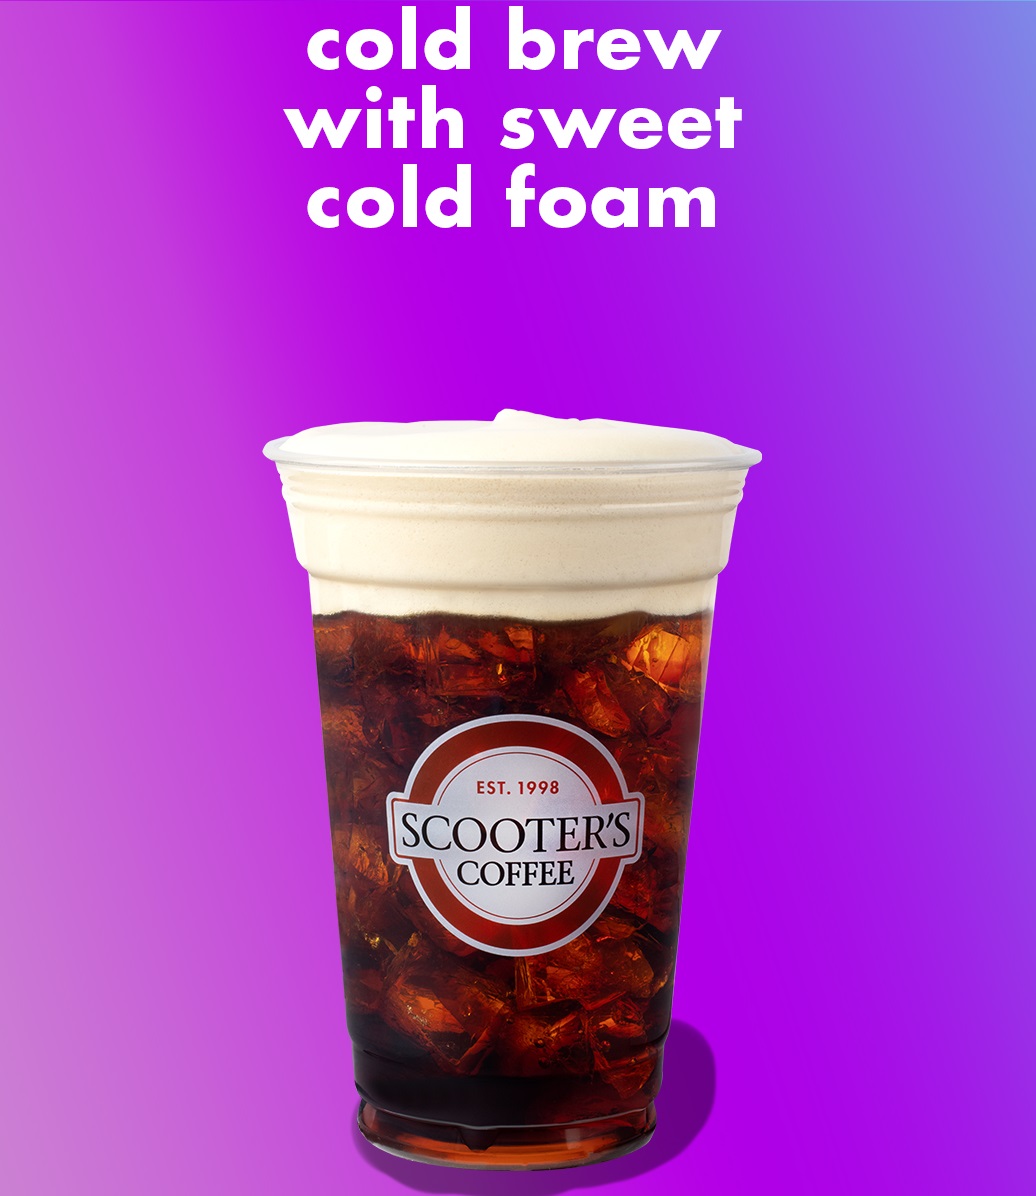 https://www.scooterscoffee.com/media/wysiwyg/cold-brew.jpg